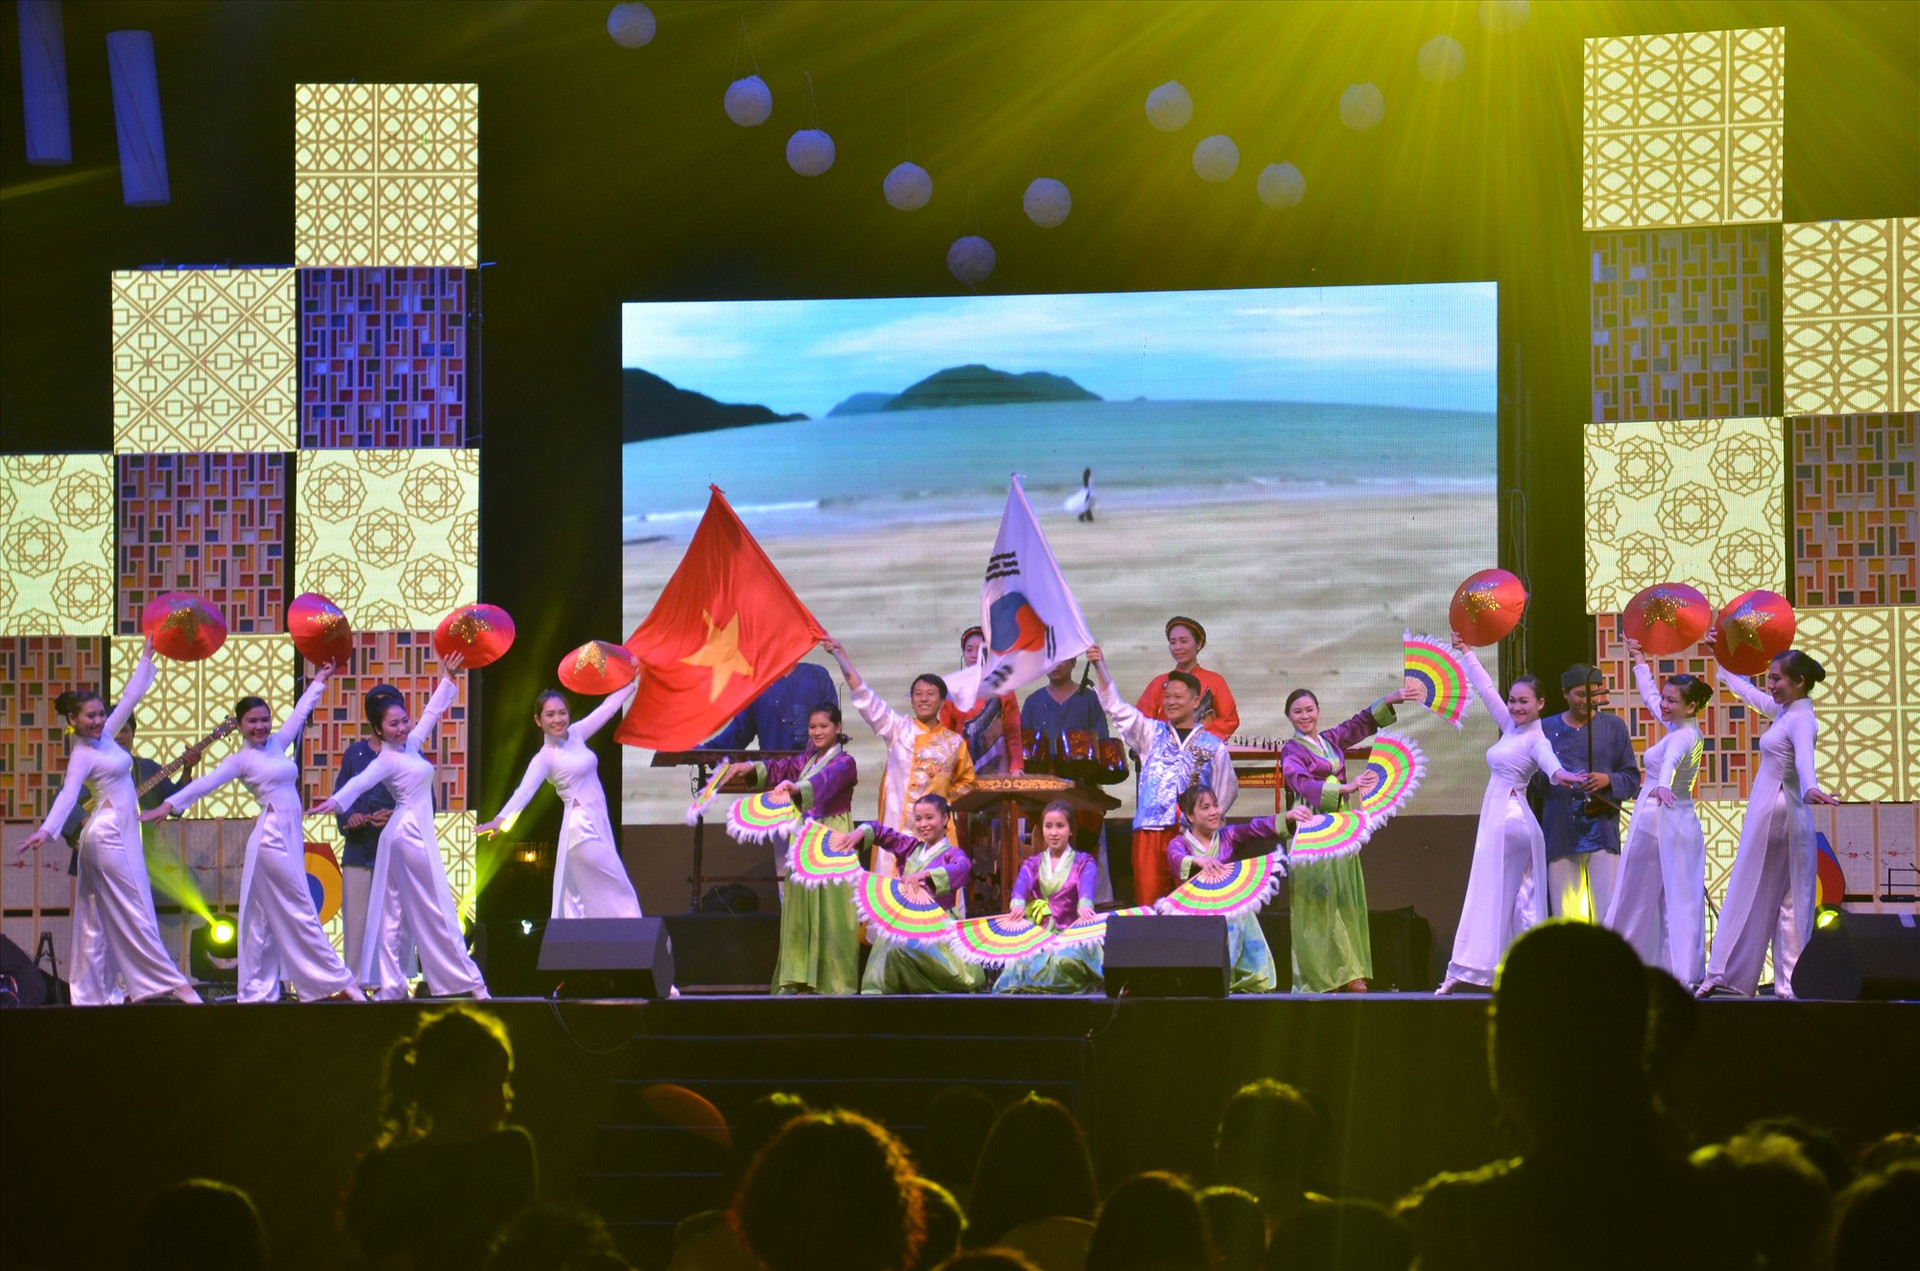 Hàn Quốc đã hỗ trợ để tổ chức các hoạt động văn hóa văn nghệ trong “Những ngày văn hóa Hàn Quốc tại Quảng Nam“. Ảnh: X.H